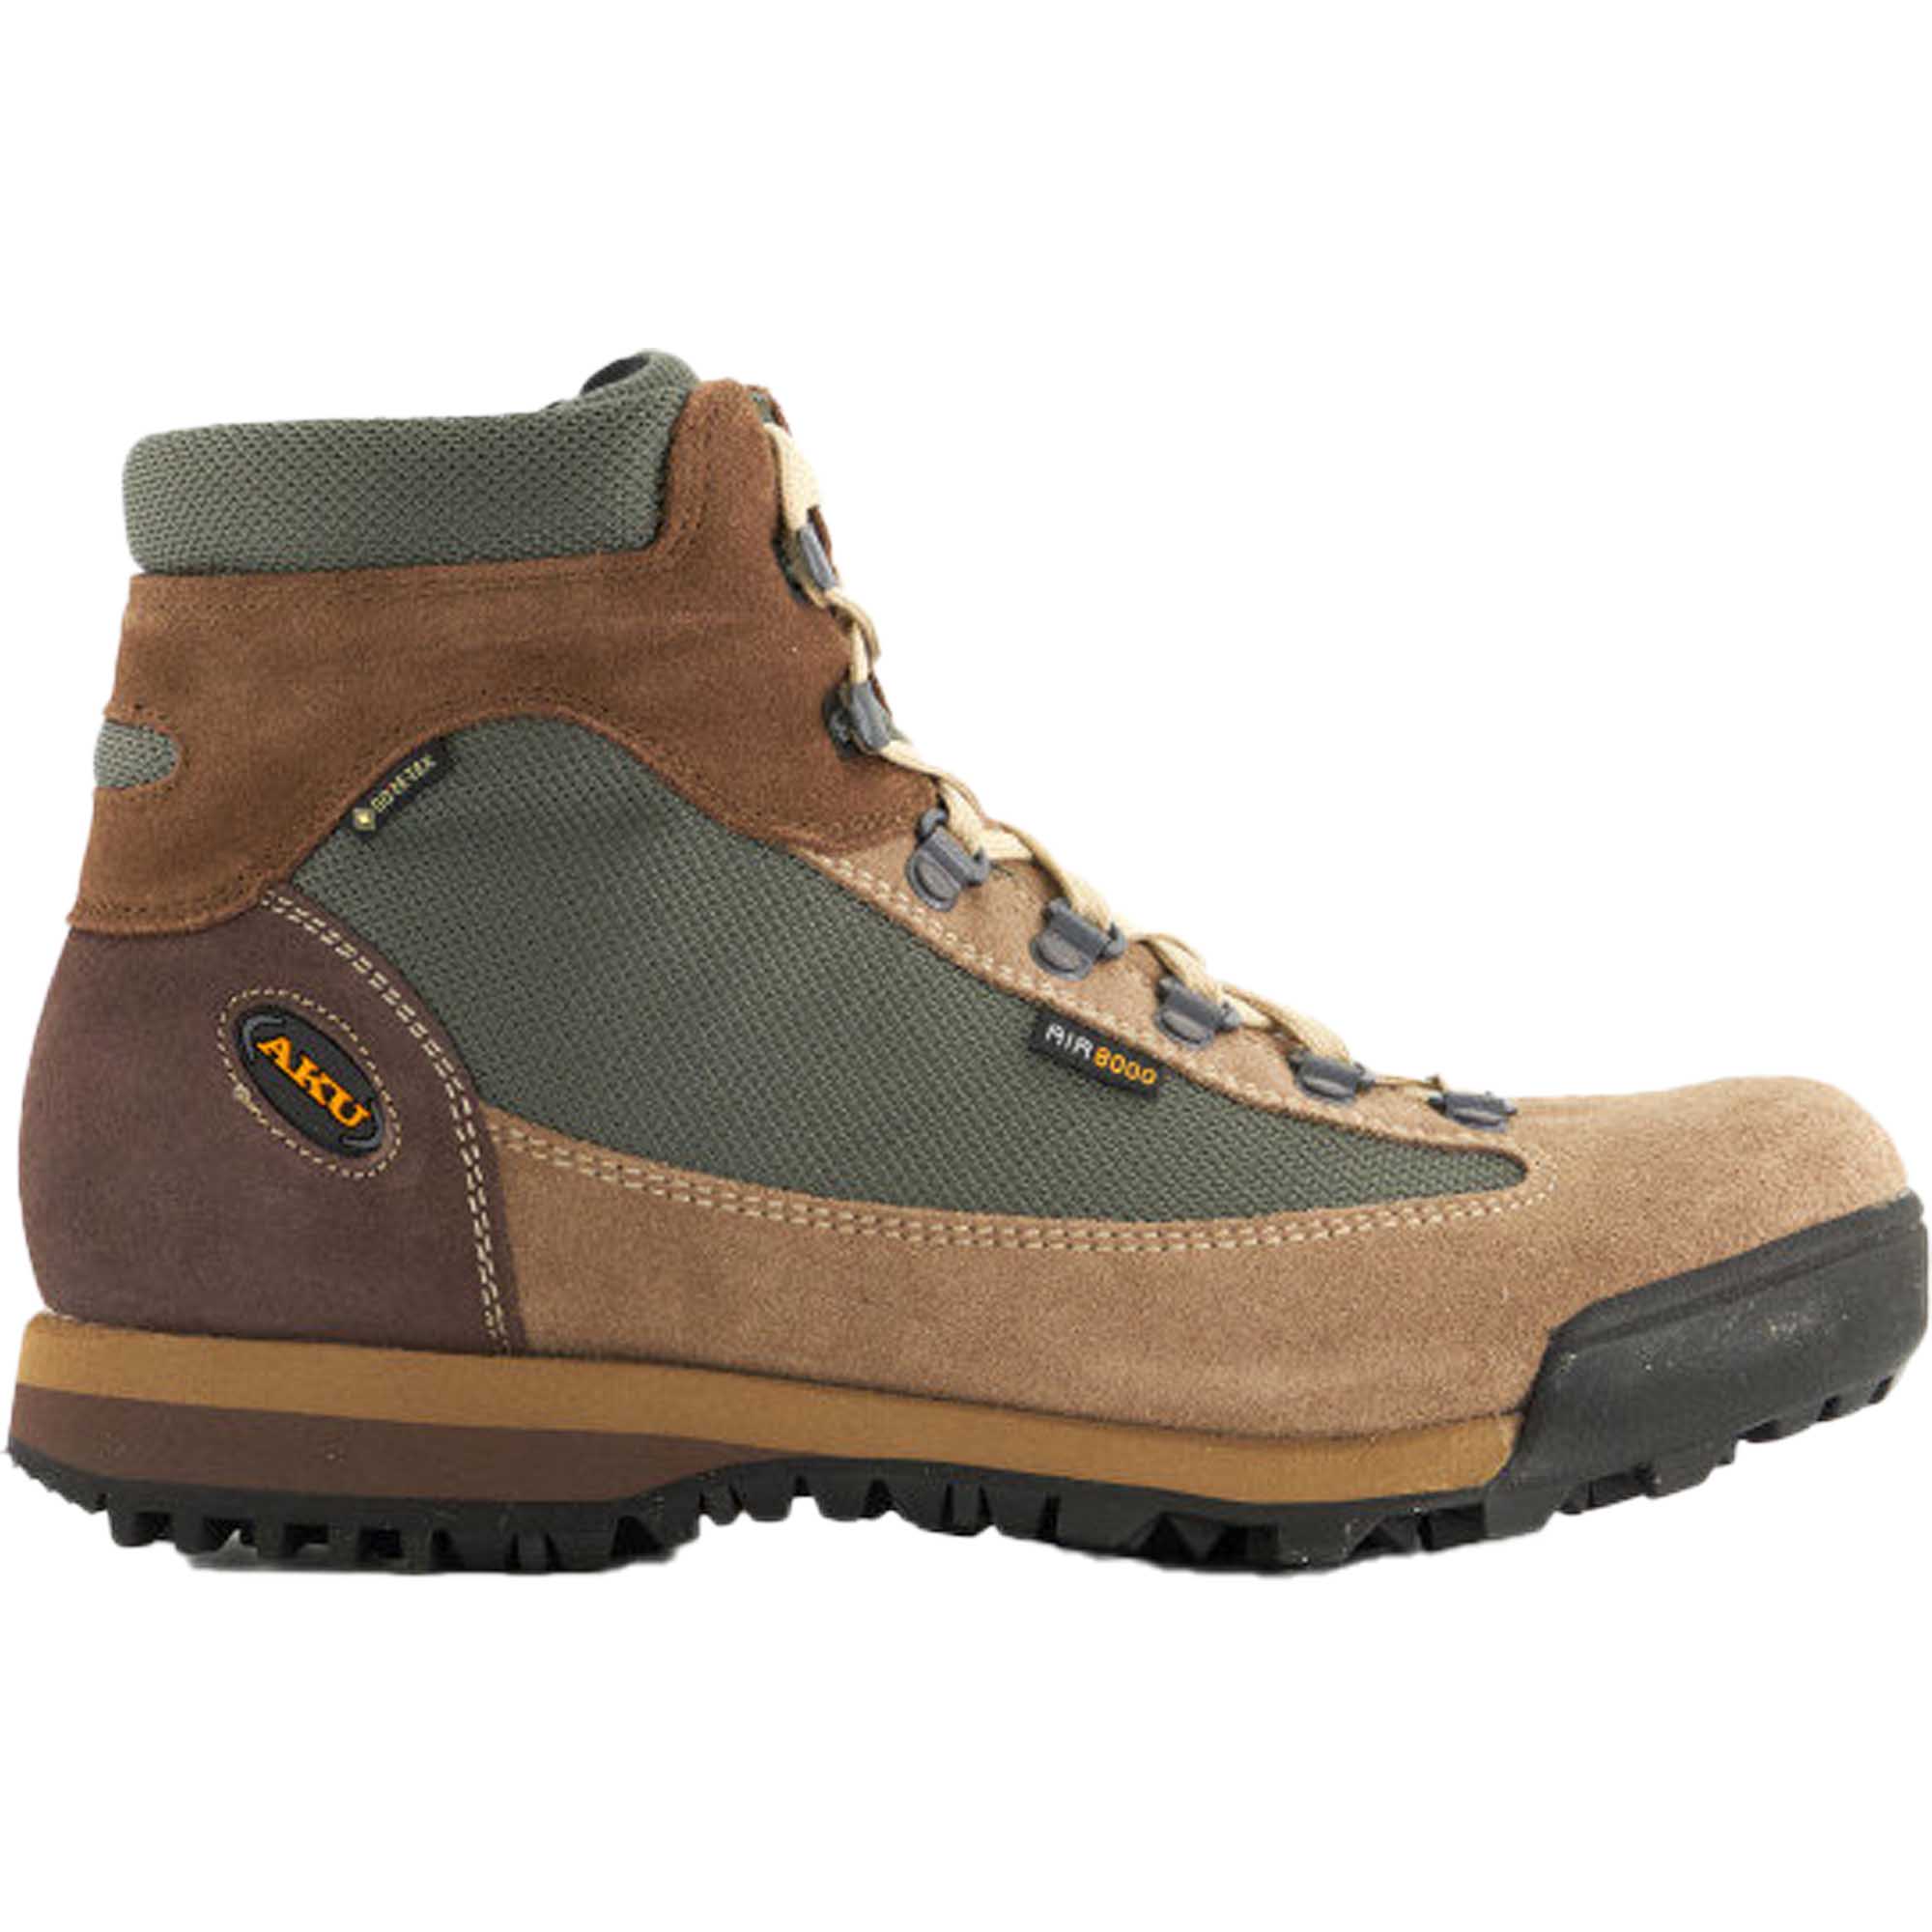 Aku Slope Original GTX Hiking Boots